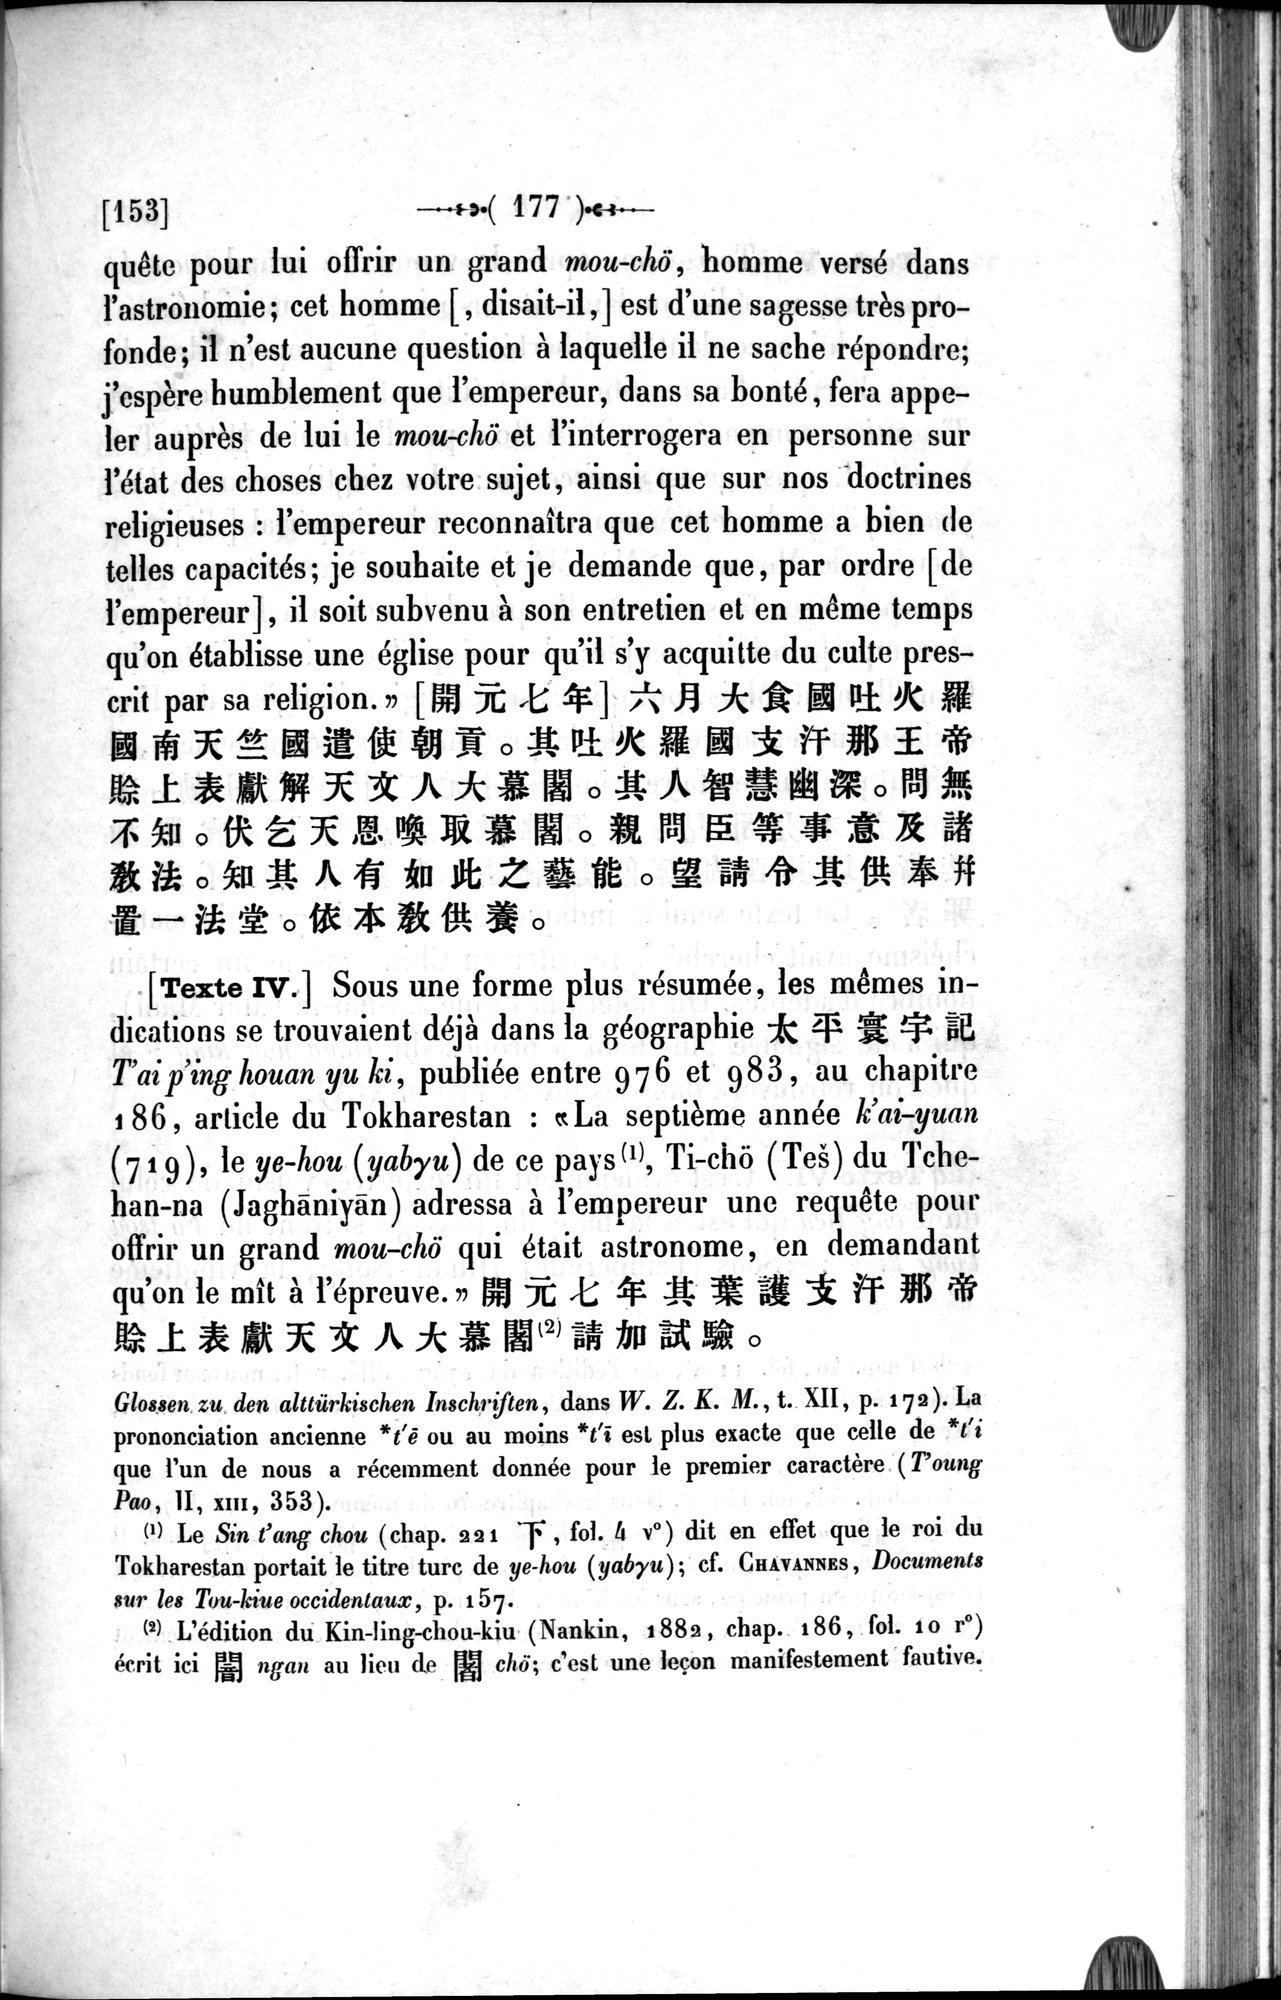 Un traité manichéen retrouvé en Chine : vol.1 / Page 187 (Grayscale High Resolution Image)